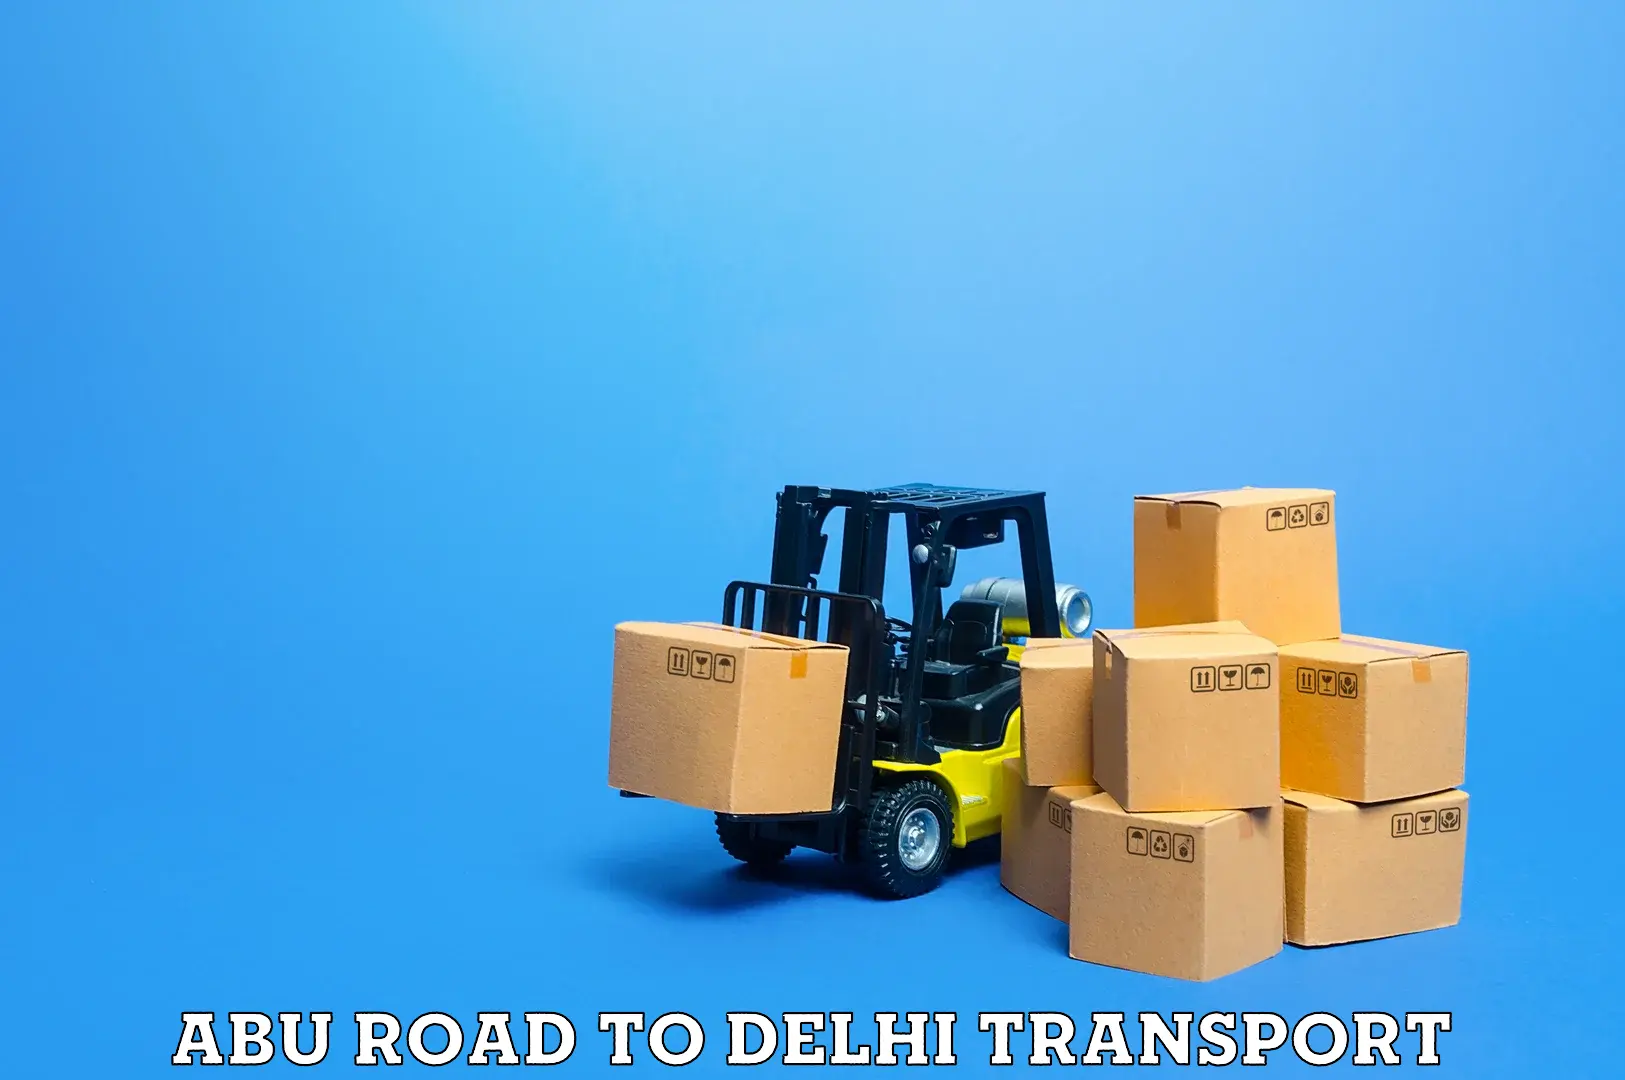 Cargo train transport services Abu Road to Delhi